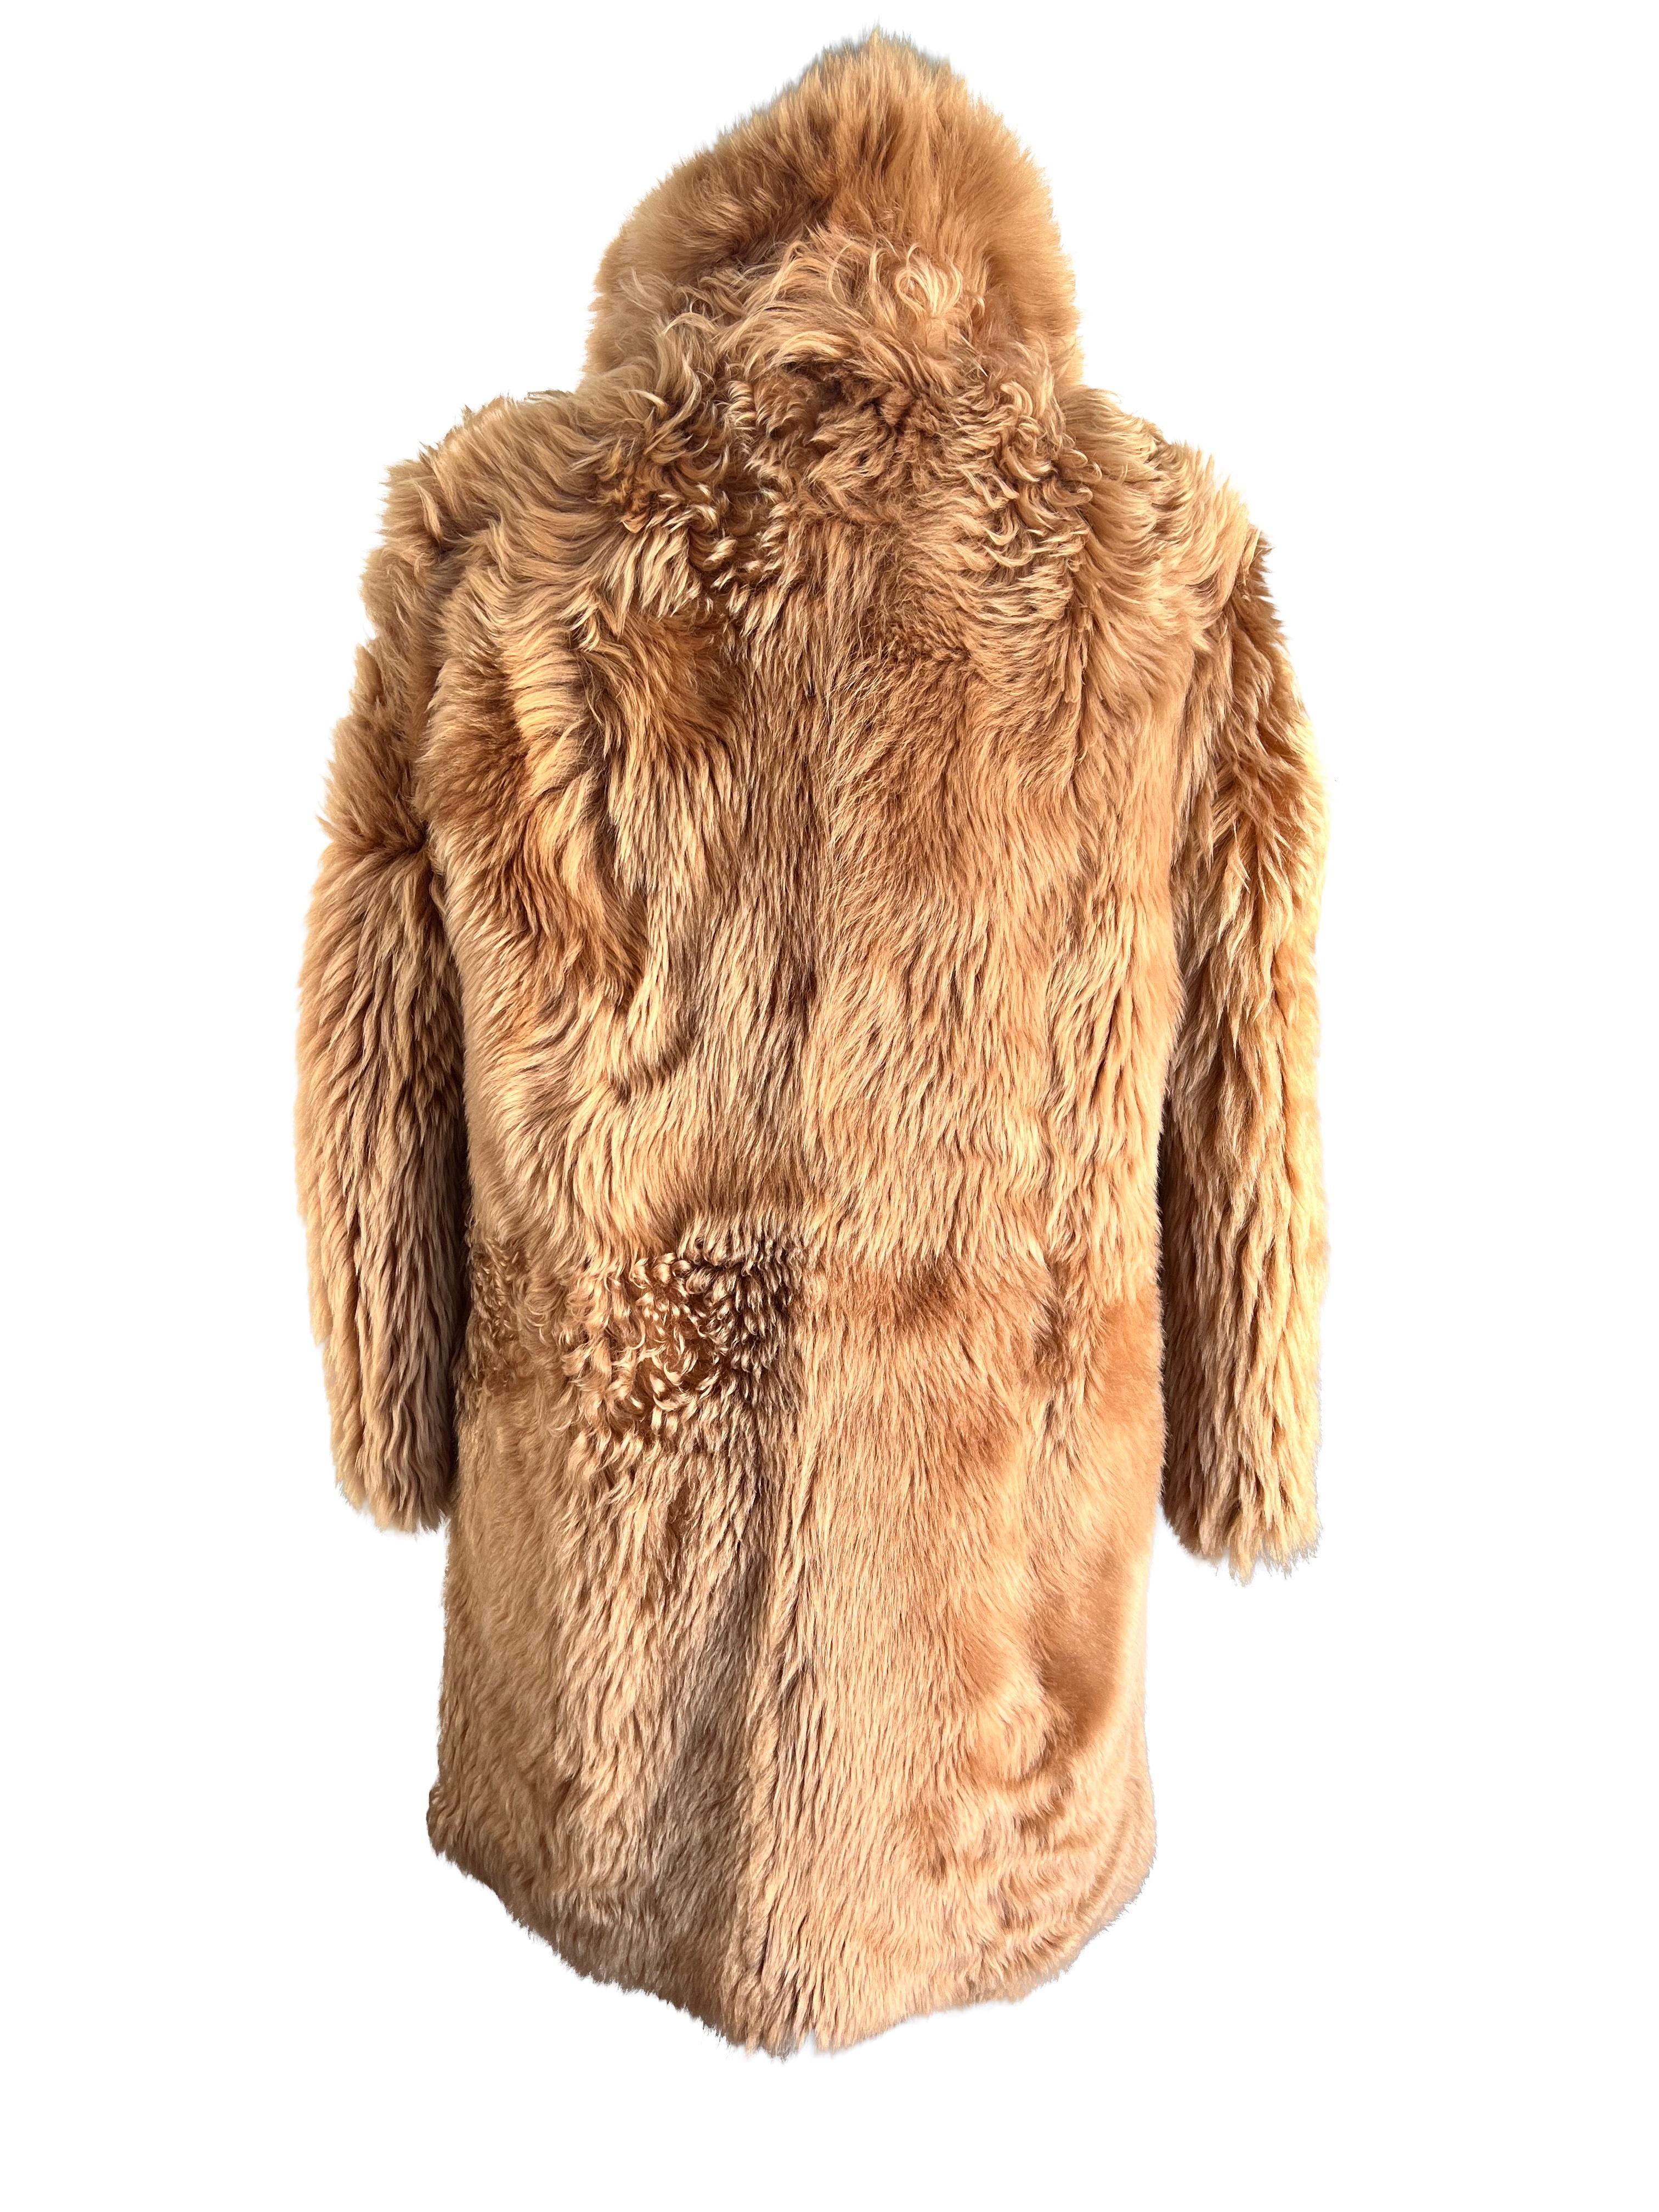 Der Miu Miu Reversible Shearling Coat ist ein luxuriöses und vielseitiges Kleidungsstück, das Wärme, Stil und Innovation nahtlos miteinander verbindet. Dieser Mantel ist ein Beweis für das Engagement von Miu Miu, die Grenzen der Mode zu erweitern